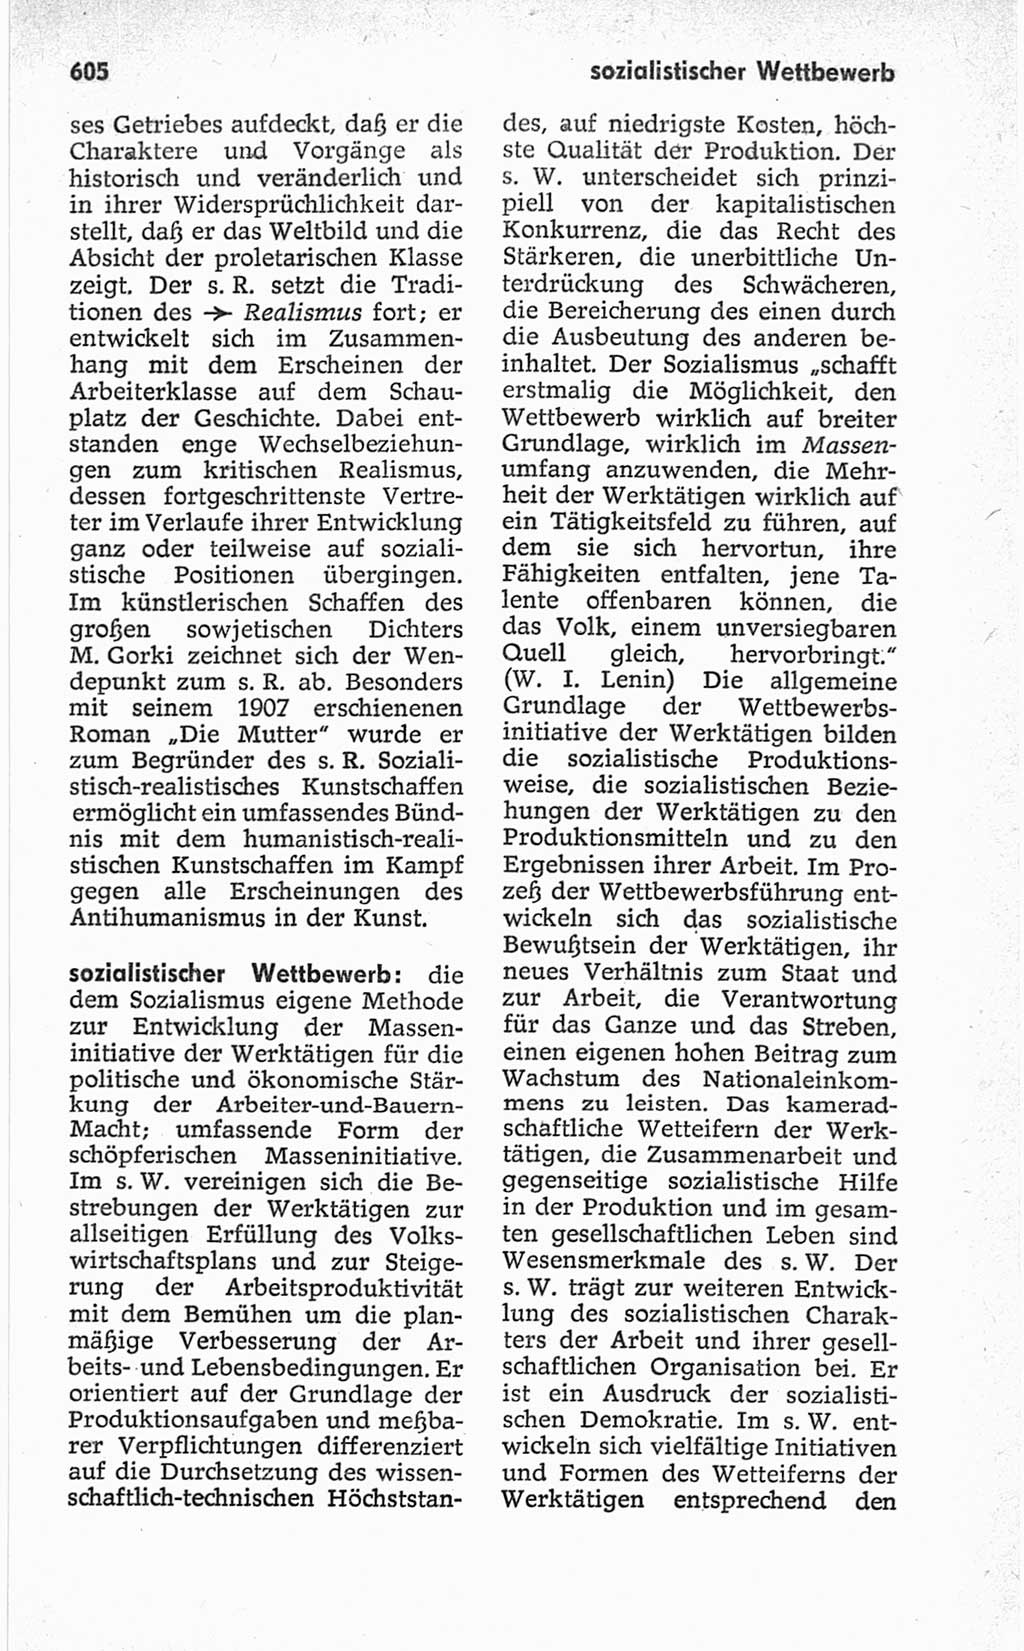 Kleines politisches Wörterbuch [Deutsche Demokratische Republik (DDR)] 1967, Seite 605 (Kl. pol. Wb. DDR 1967, S. 605)